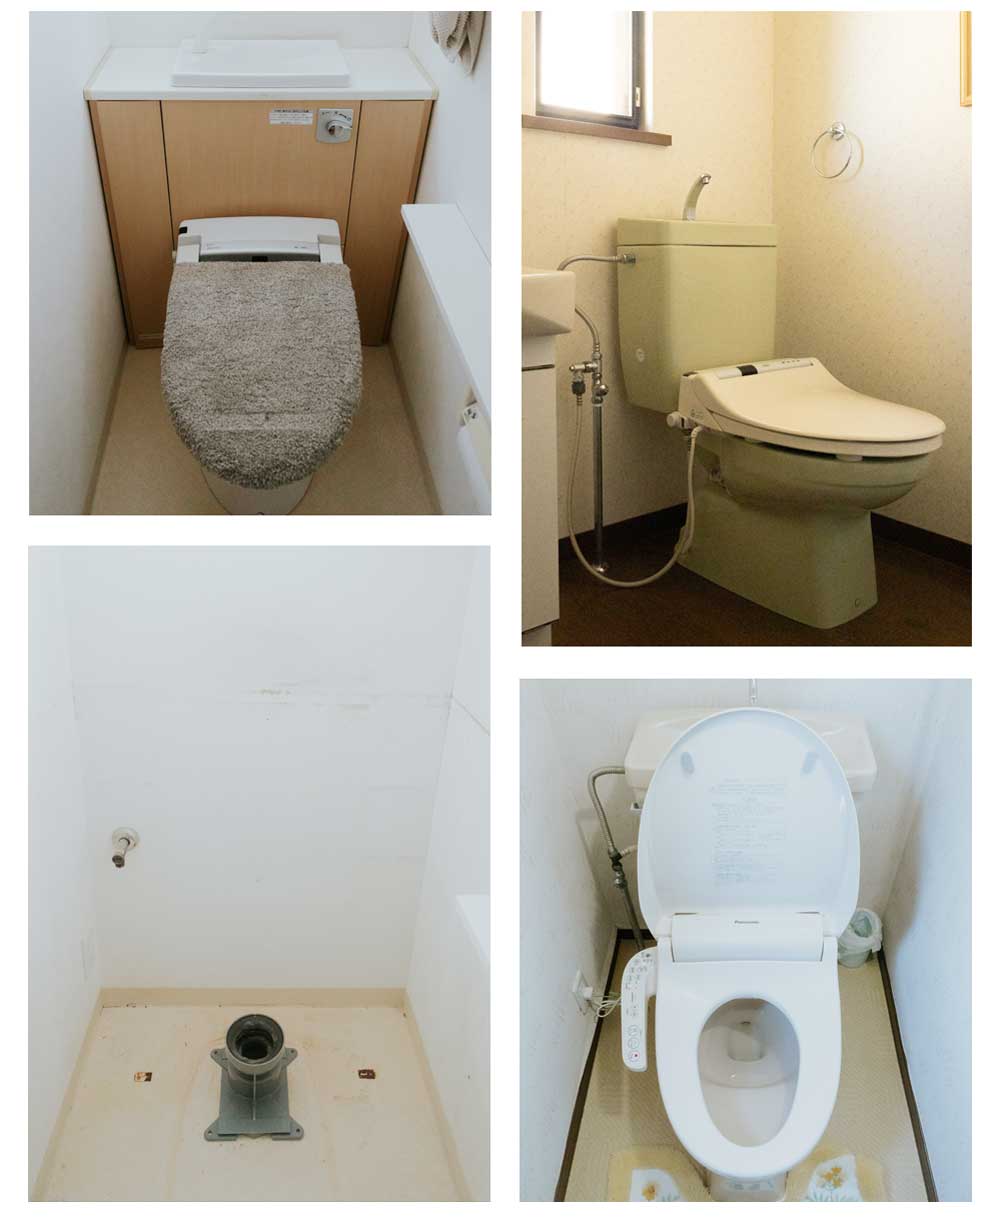 キョウトスイスイでは低価格な作業料金で京都のトイレ詰まりを解消できる